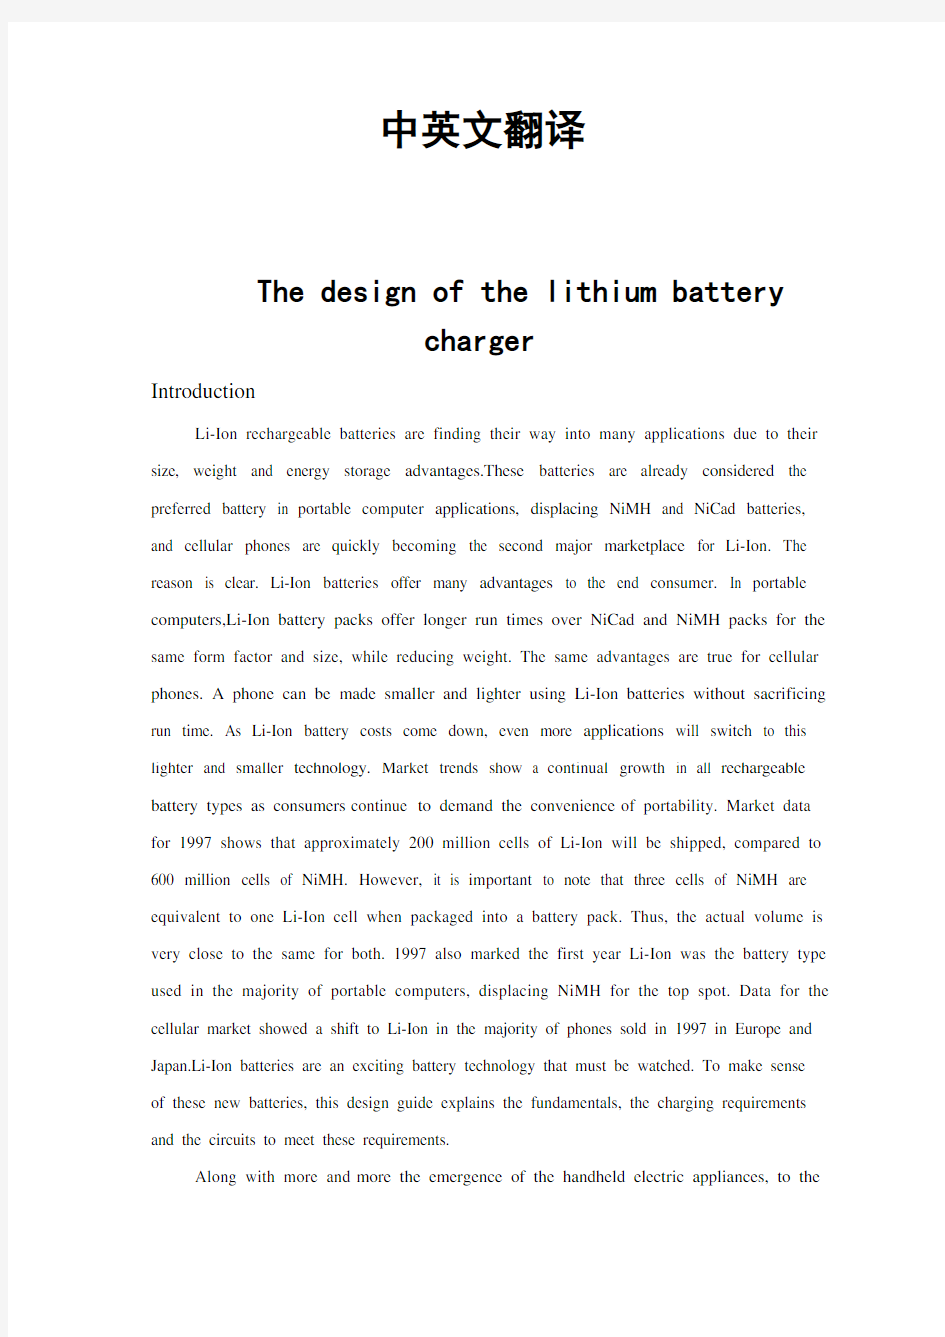 锂电池充电器中英文对照外文翻译文献